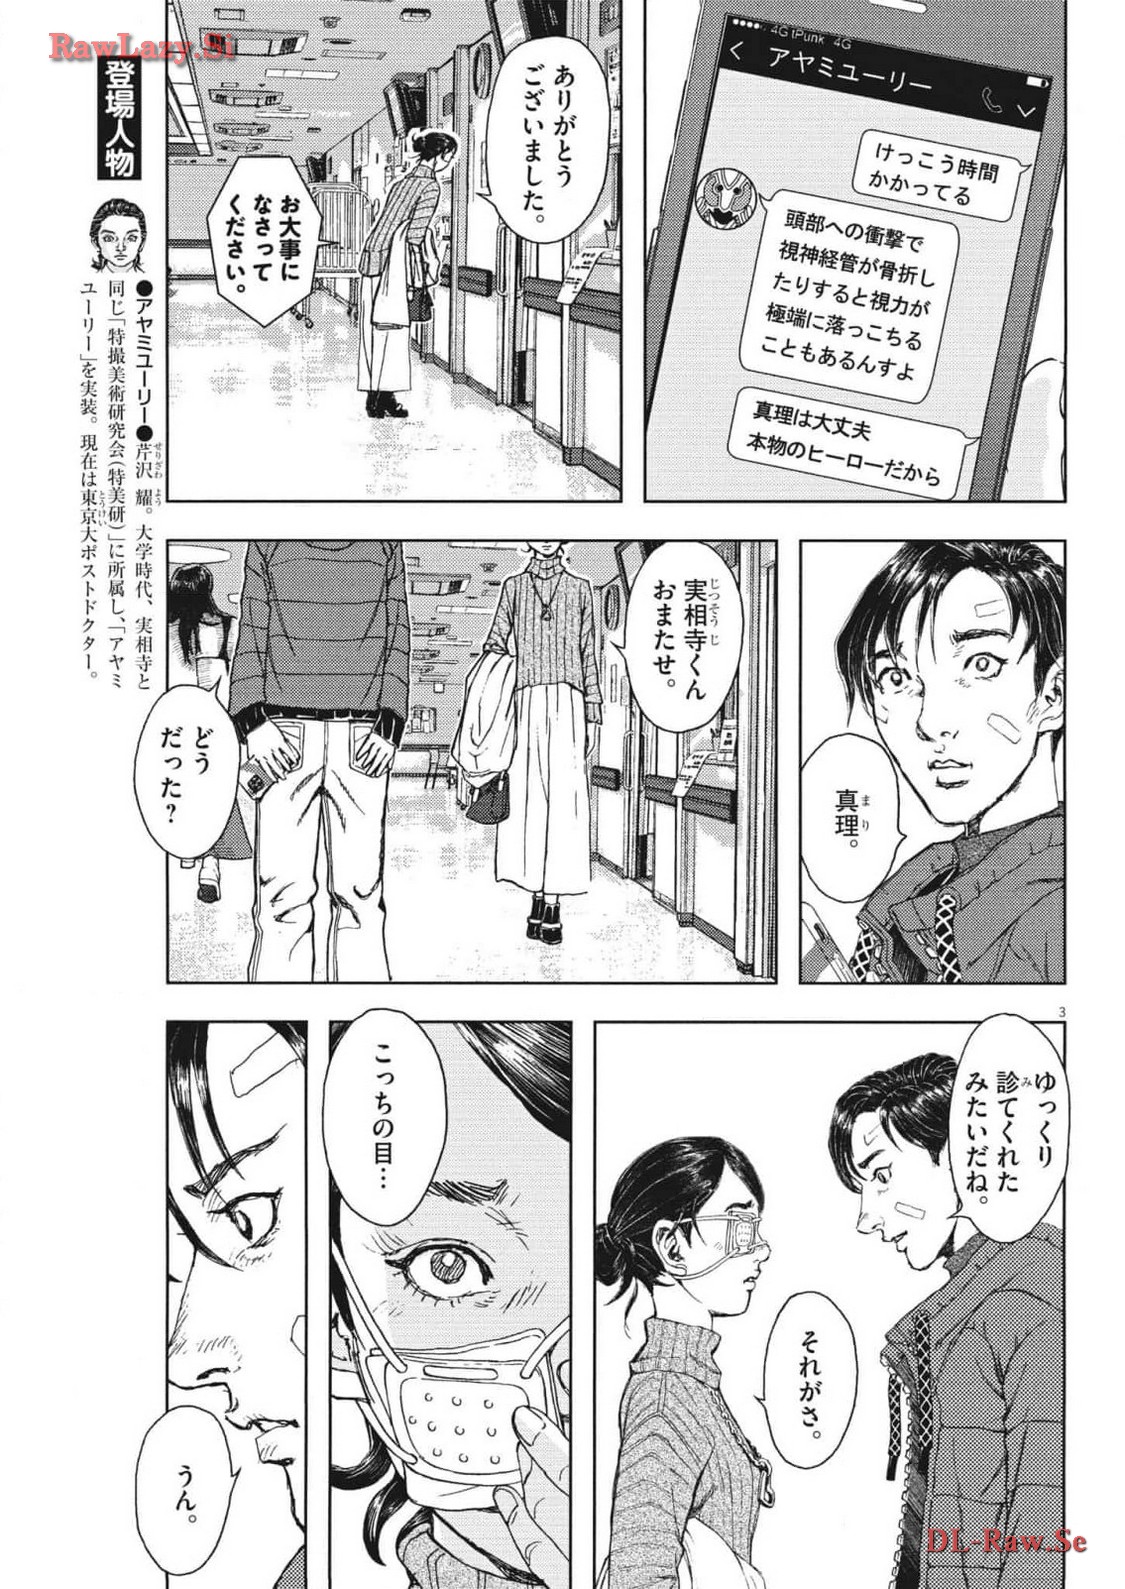 Gekkou Kamen - Chapter 44 - Page 3